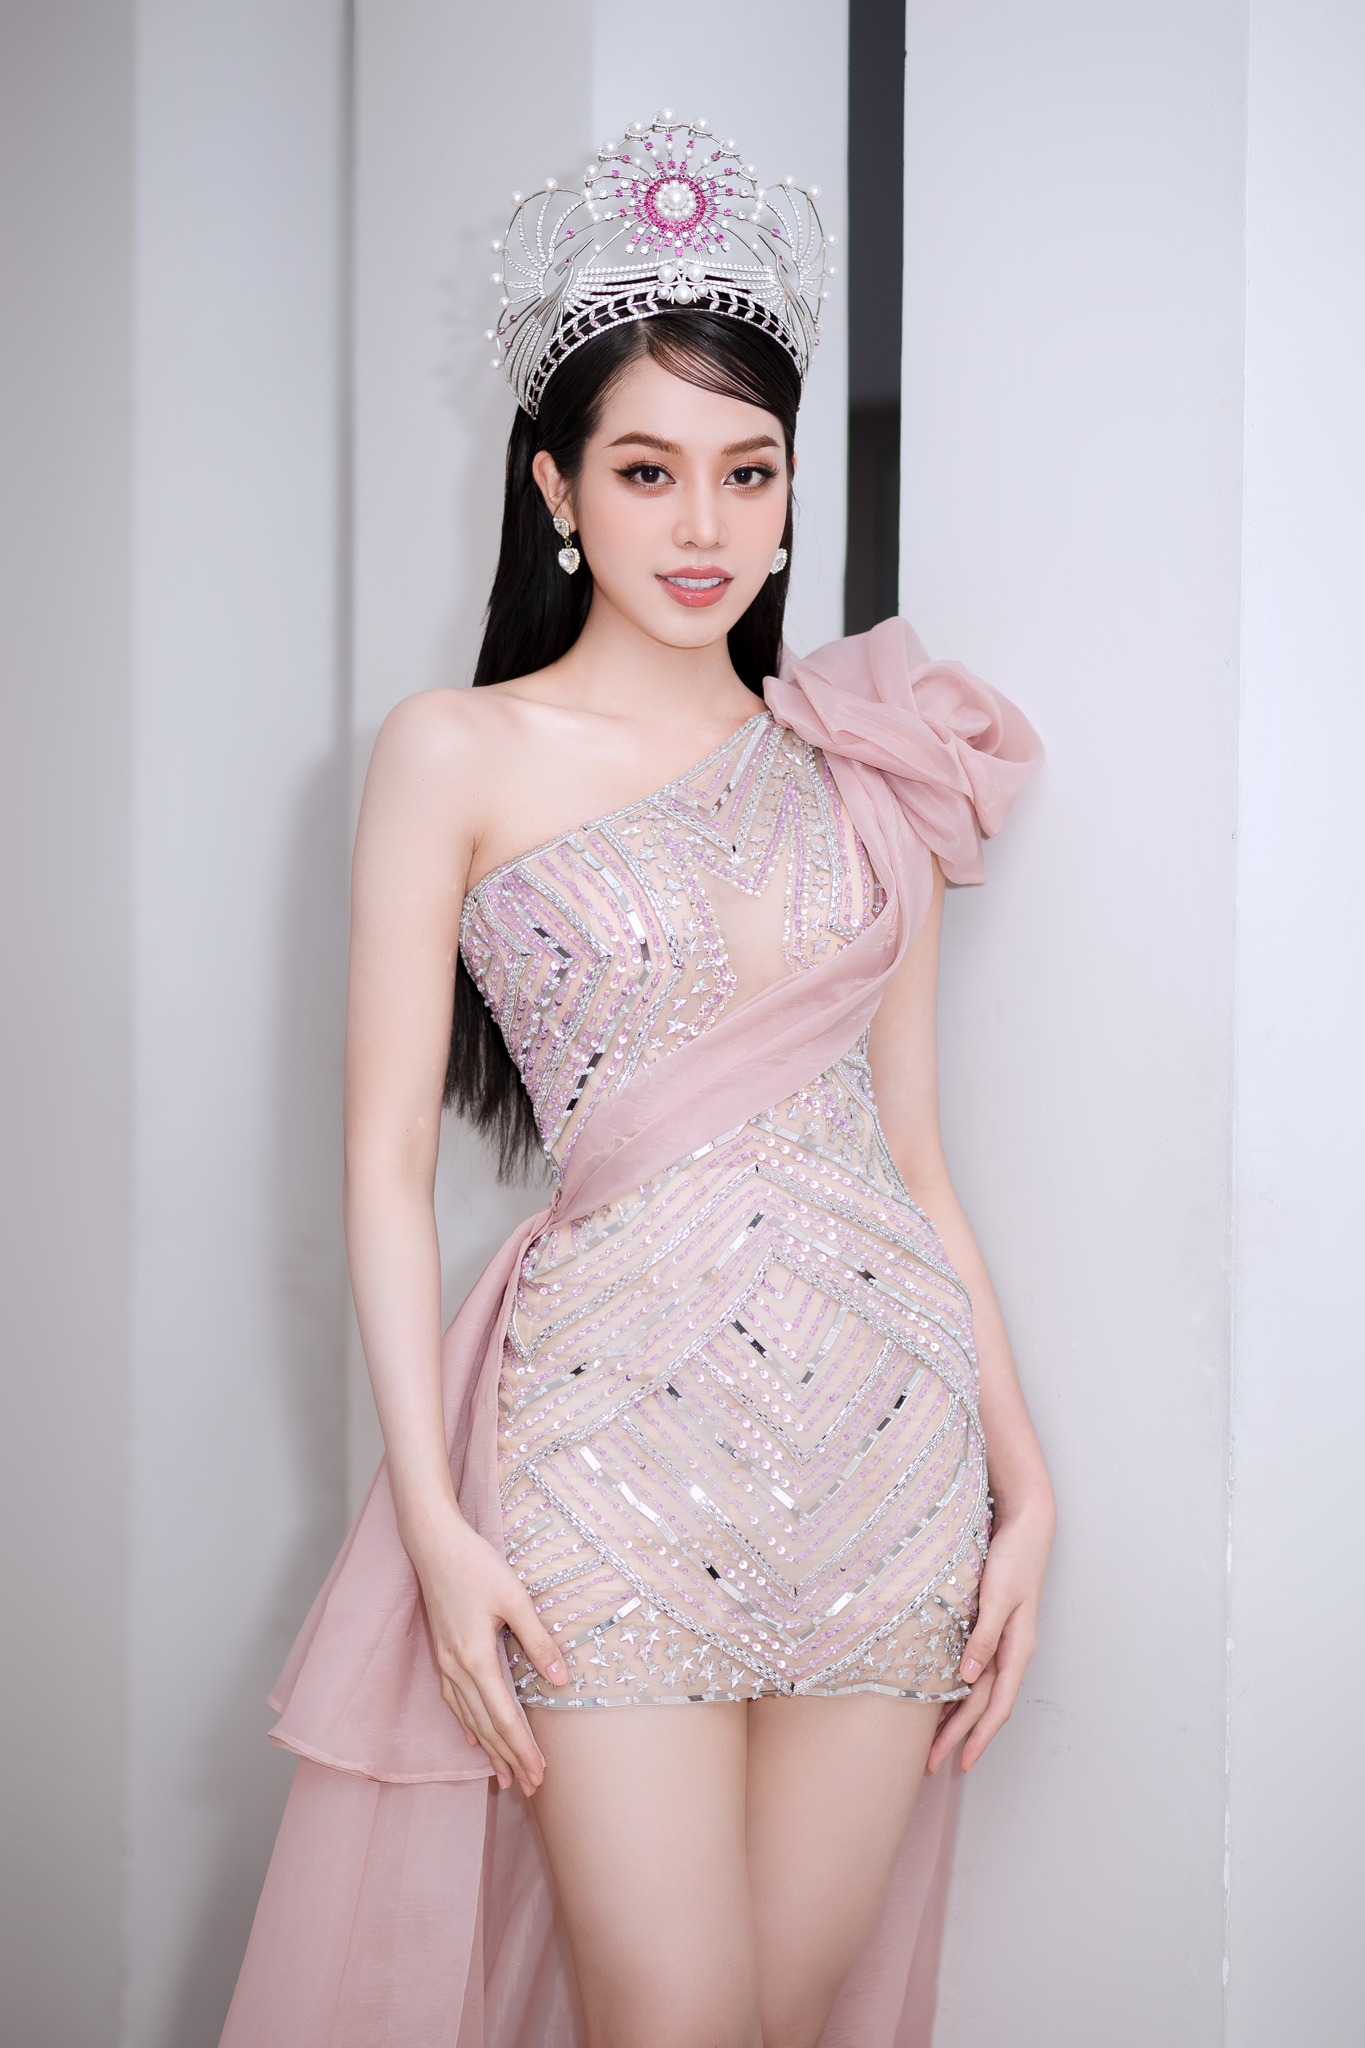 Hoa hậu Việt Nam 2022 mới đăng quang đã thừa nhận sửa ngực, nhan sắc gây bất ngờ - 6